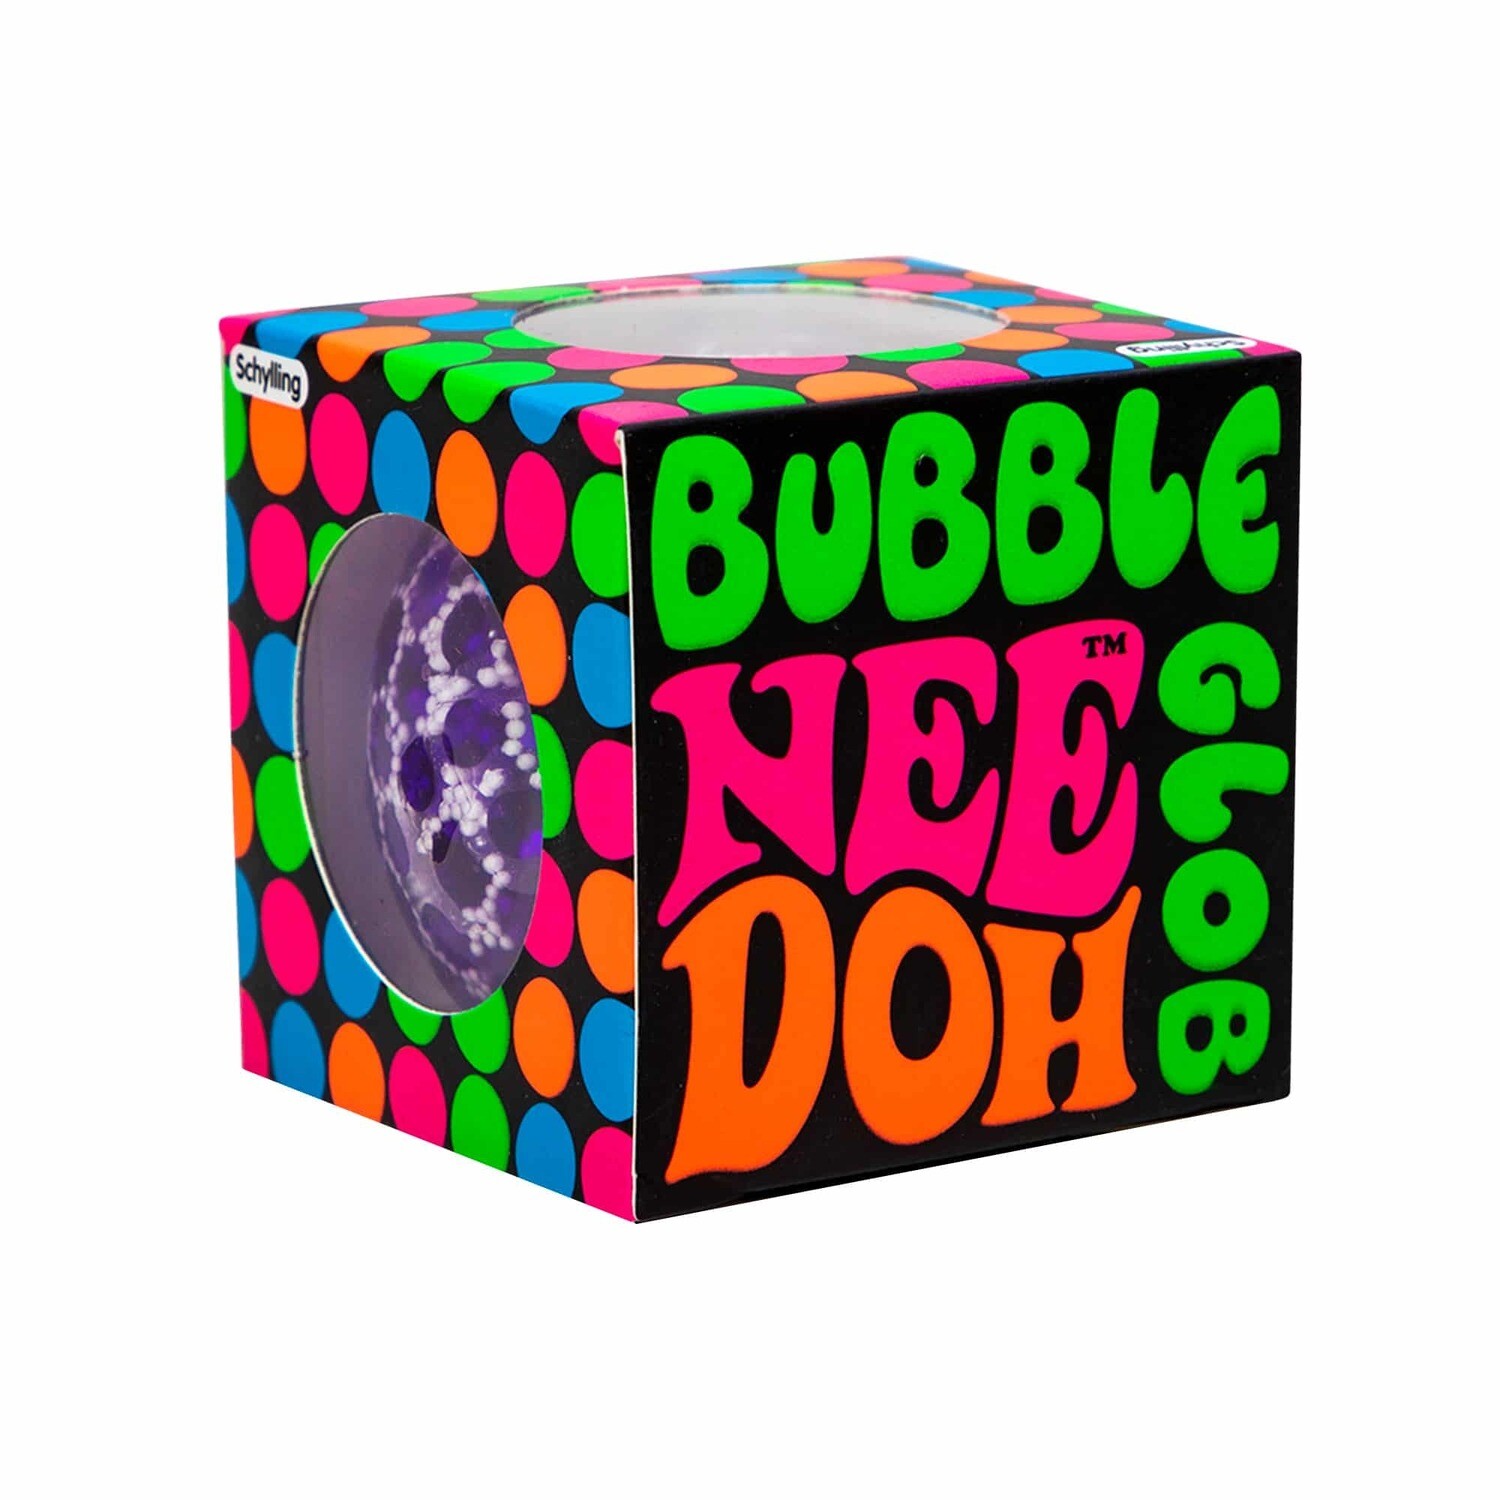 Bubble Glog Nee Doh